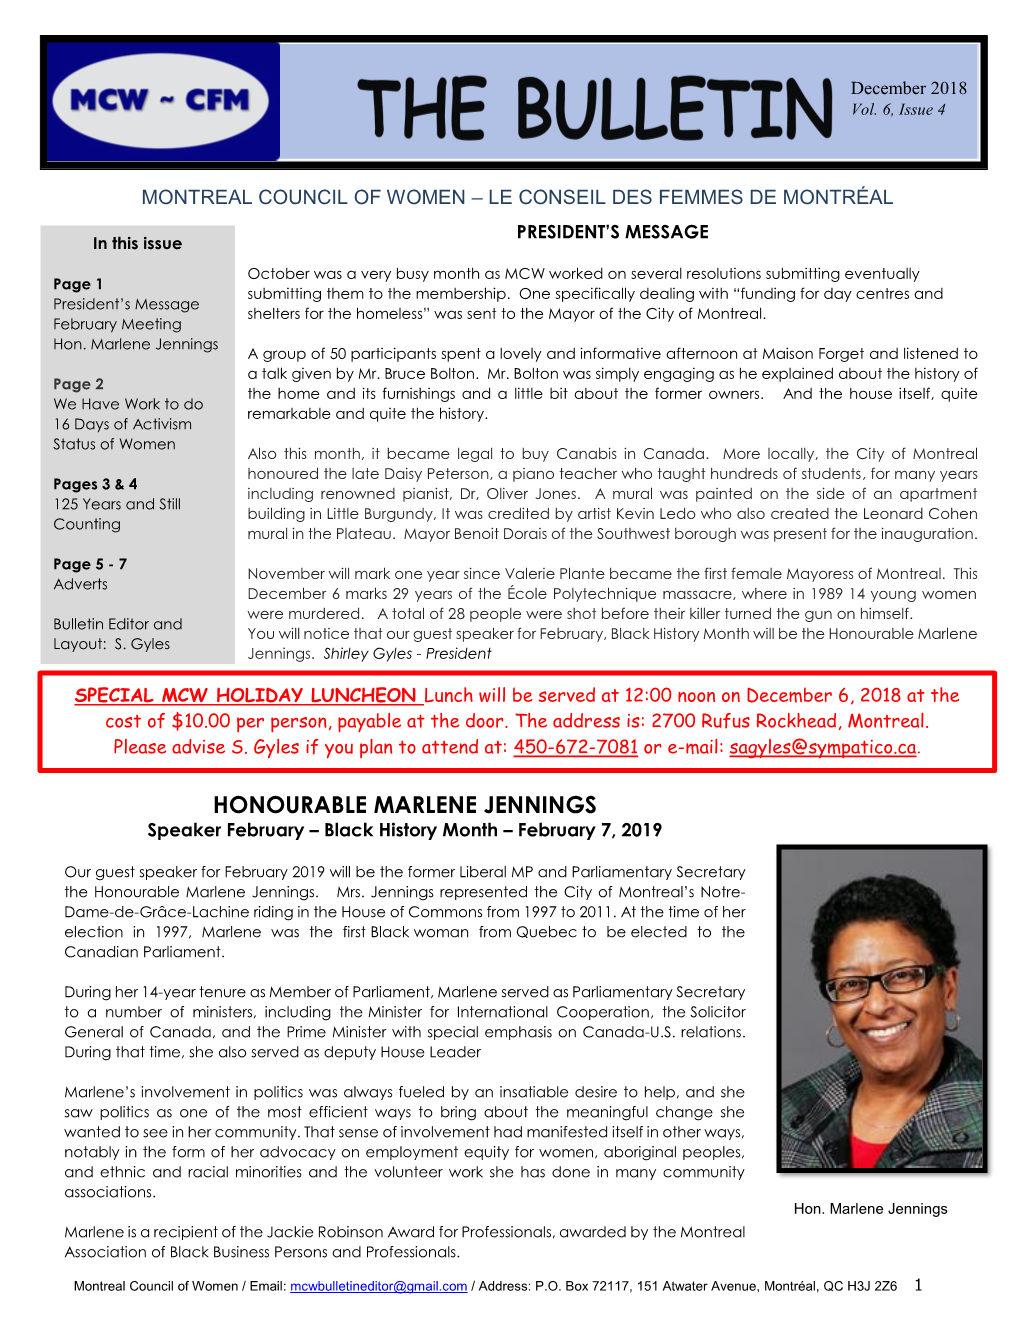 HONOURABLE MARLENE JENNINGS Speaker February – Black History Month – February 7, 2019